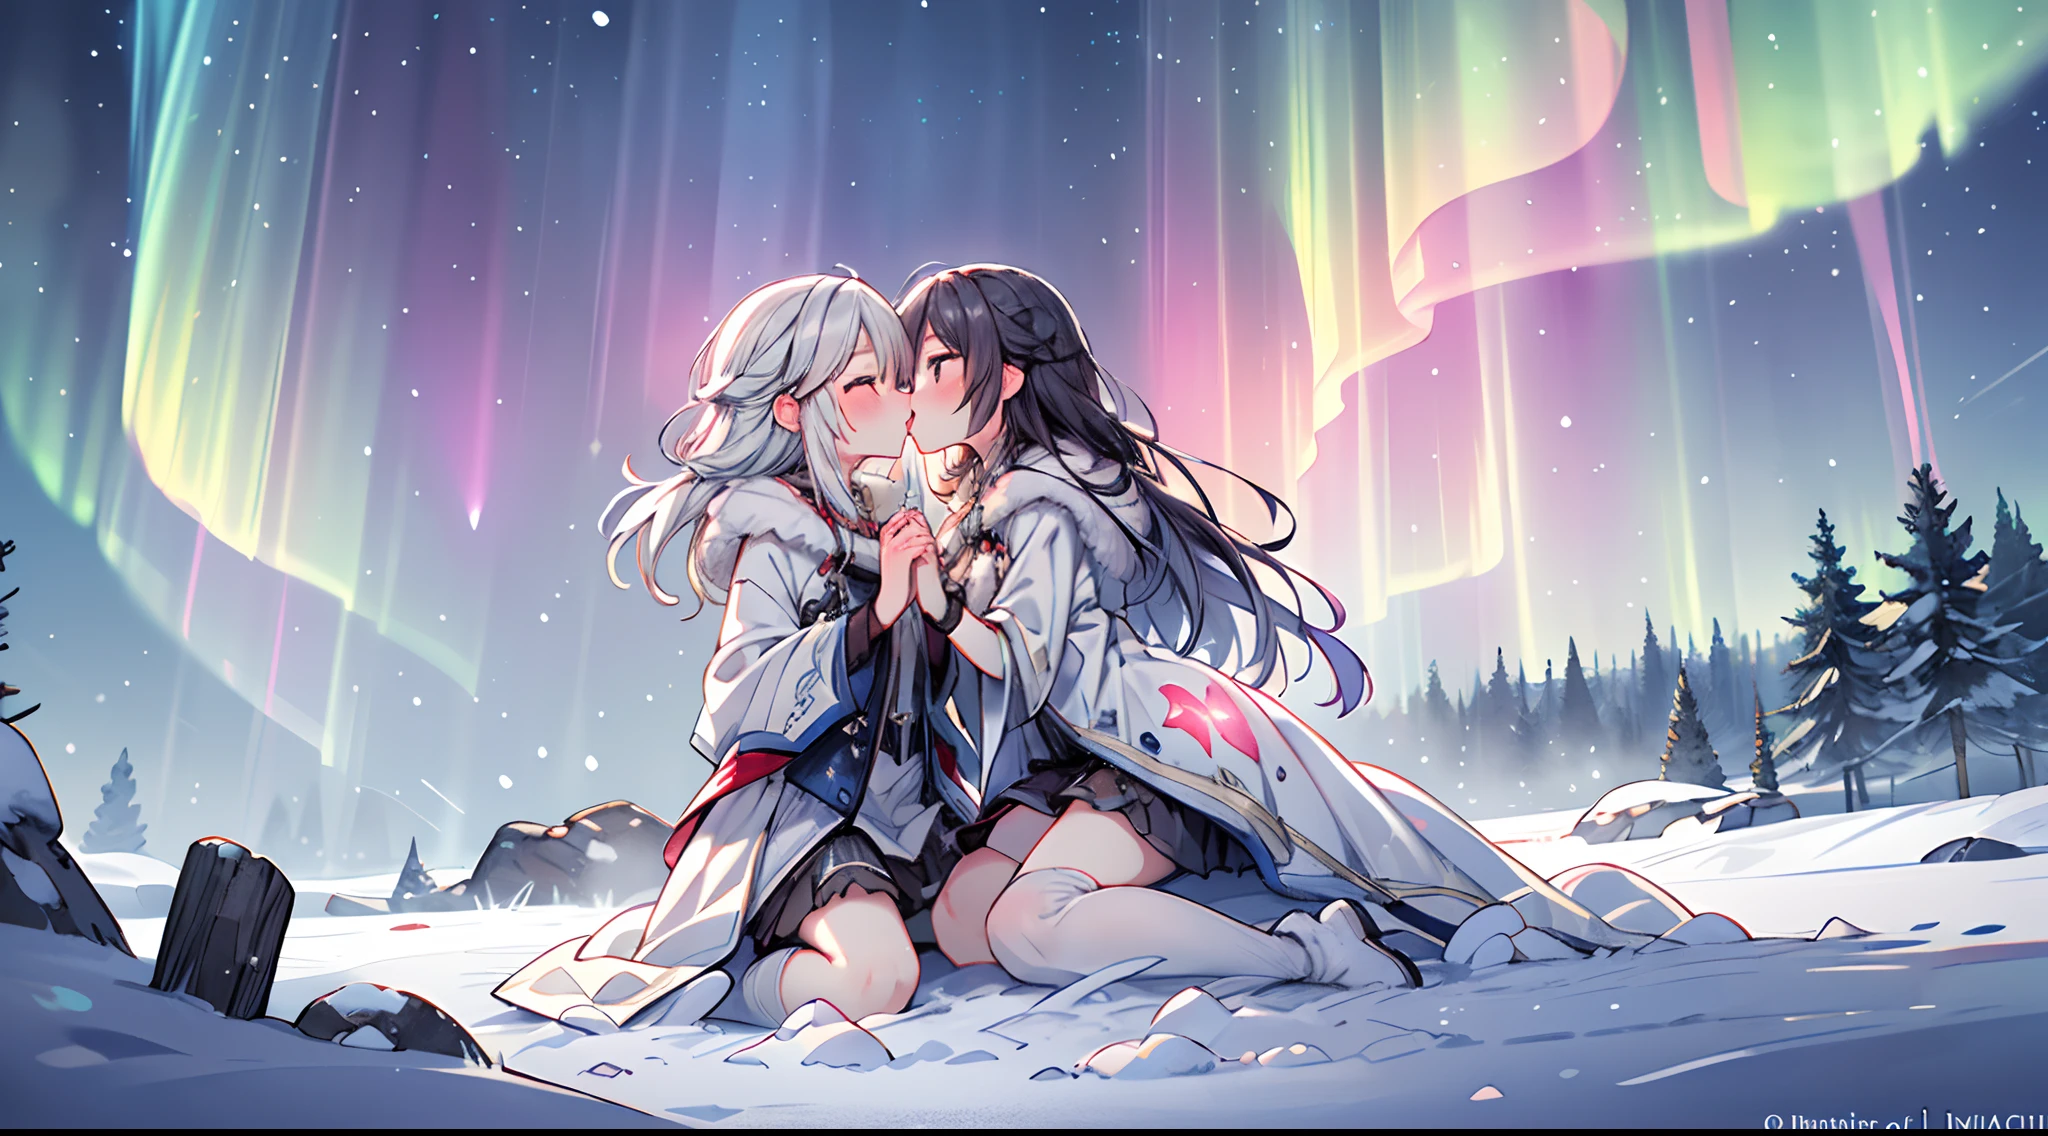 Debajo del brillo mágico de la aurora boreal, dos almas se abrazan en un beso en la boca, los colores etéreos de la aurora boreal lanzan un hechizo de otro mundo, El paisaje cubierto de nieve aumenta el encanto., renderizado 3D, usando iluminación suave y texturas translúcidas para capturar la calidad mística de la escena